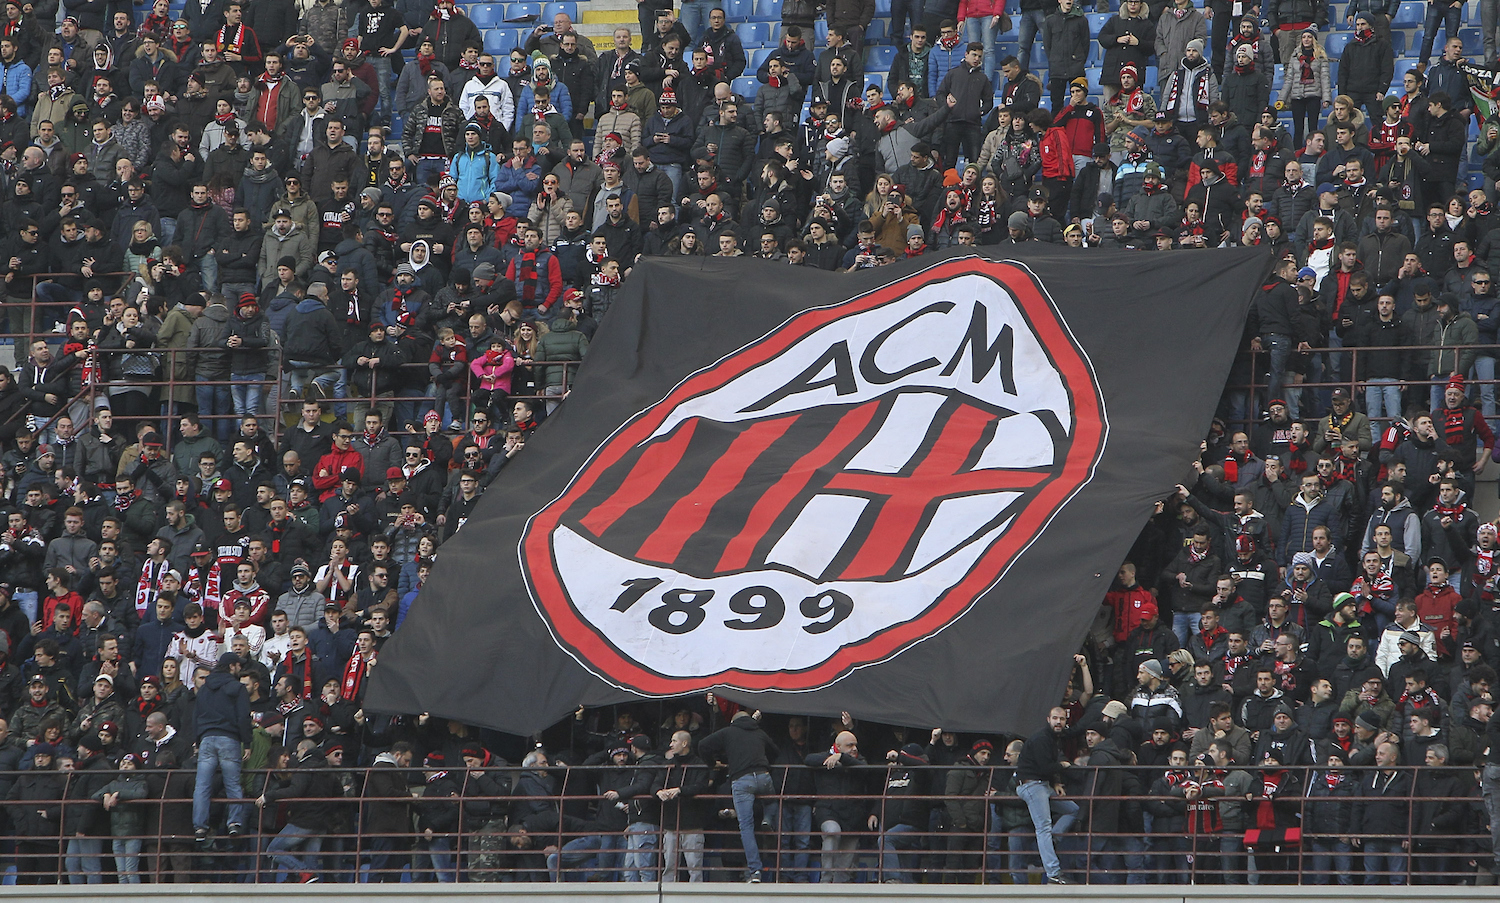 AC Milan v Bologna FC - Serie A